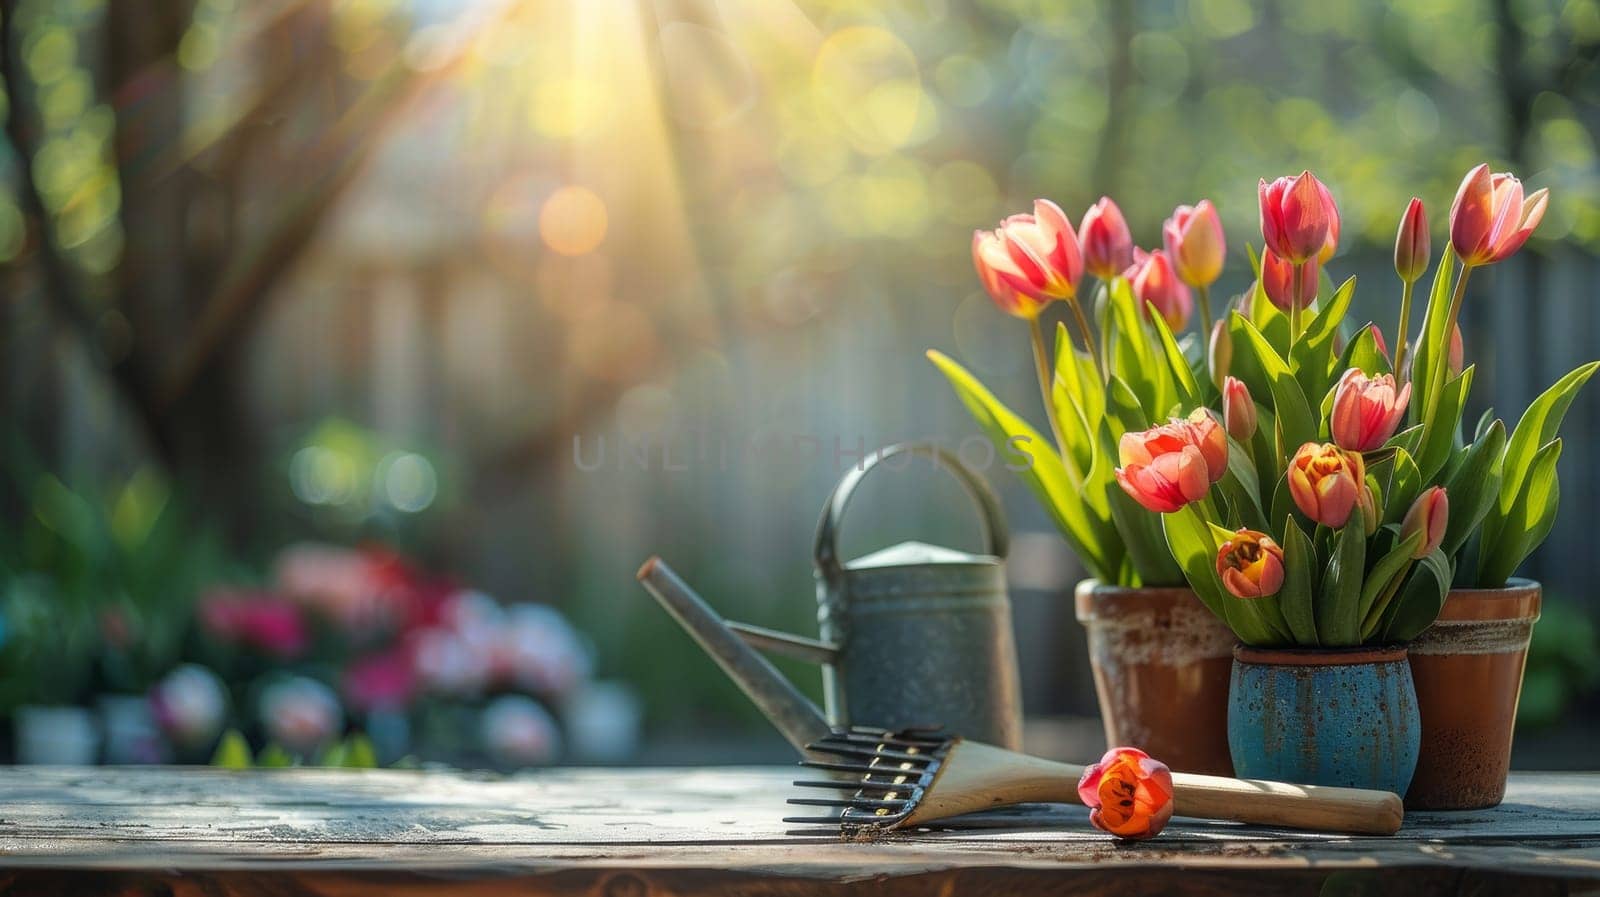 flowerpots of tulips, spring flower season.